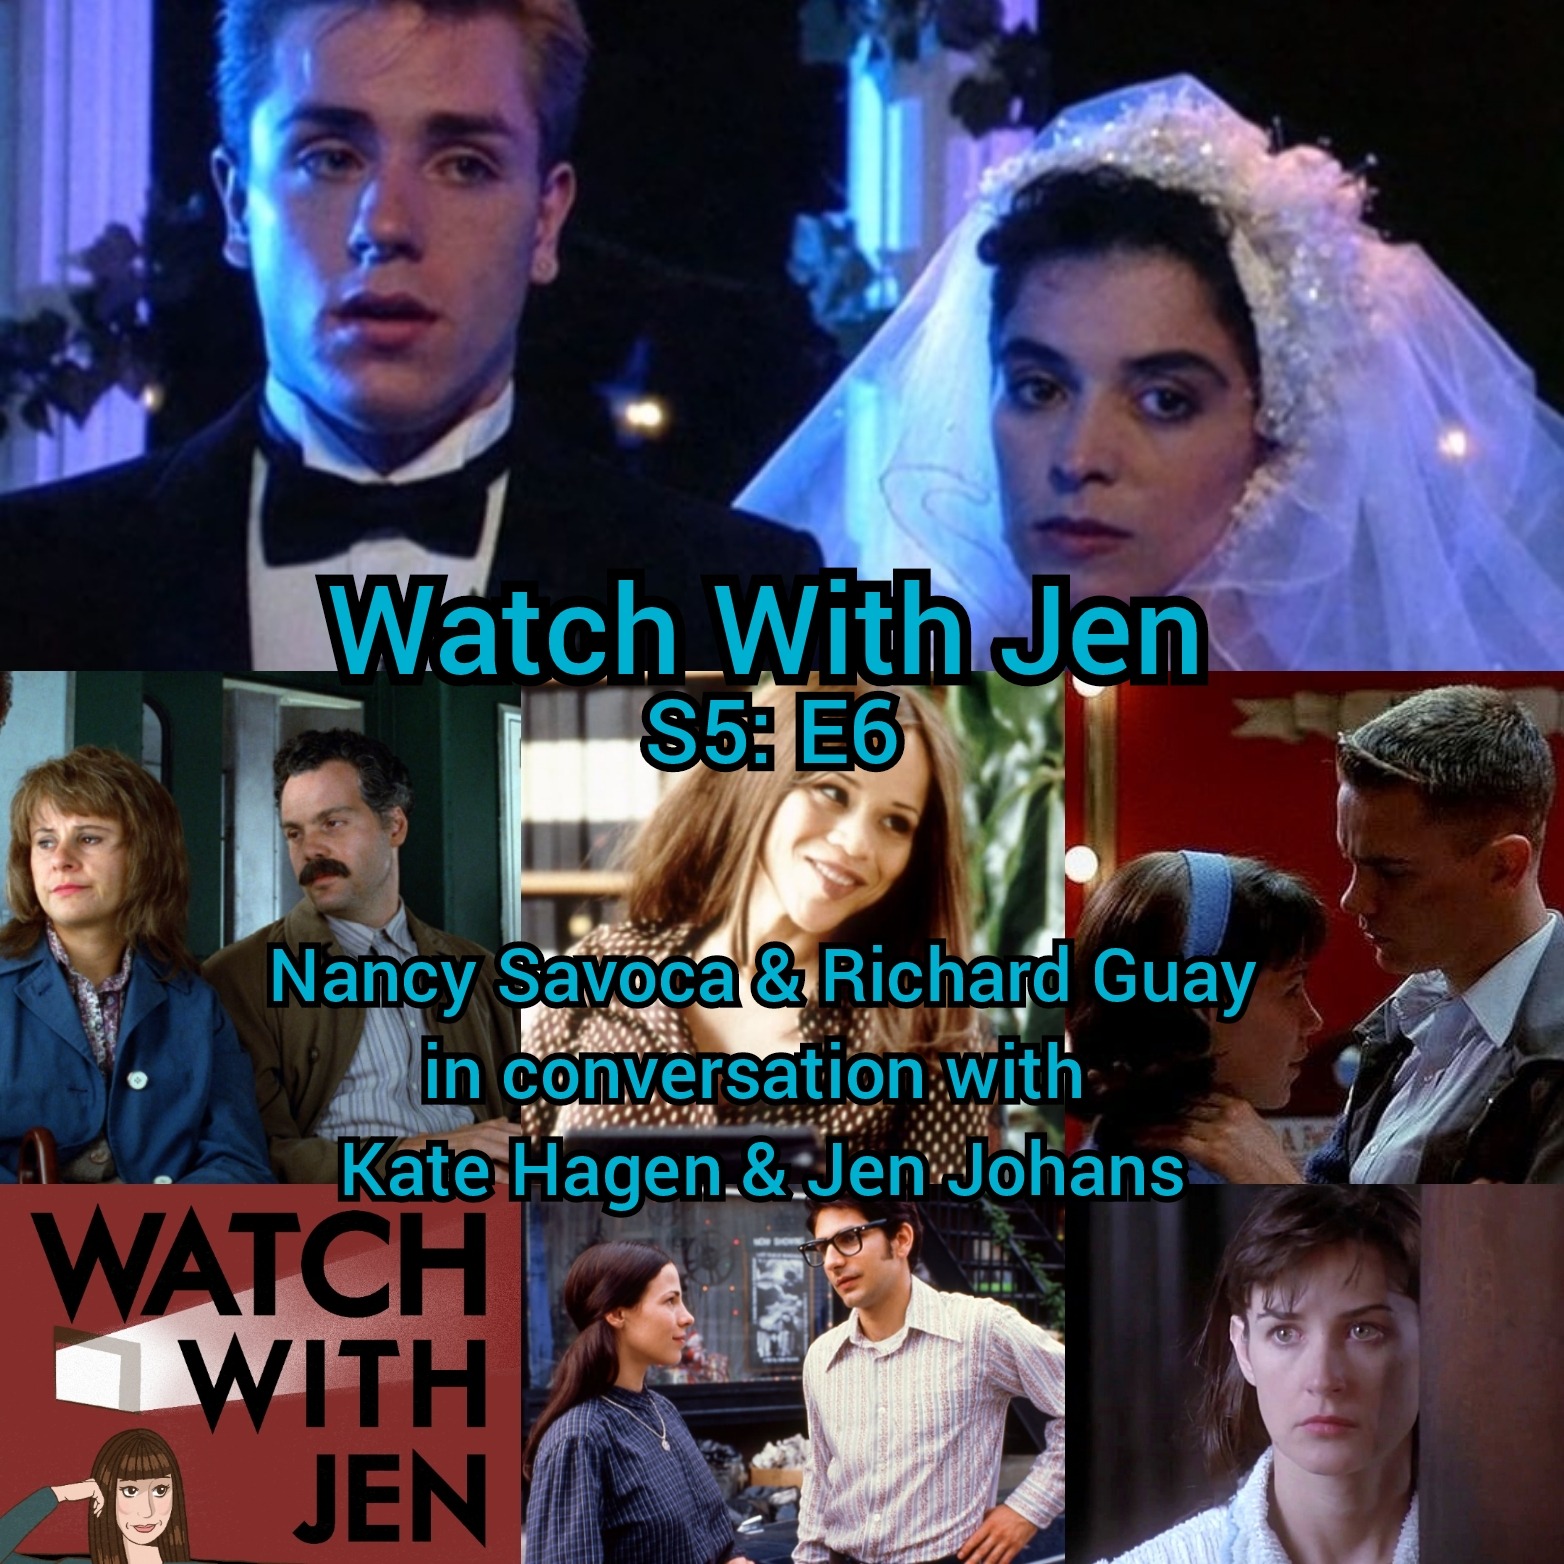 Watch With Jen - S5: E6 - Nancy Savoca & Richard Guay in conversation with Kate Hagen & Jen Johans